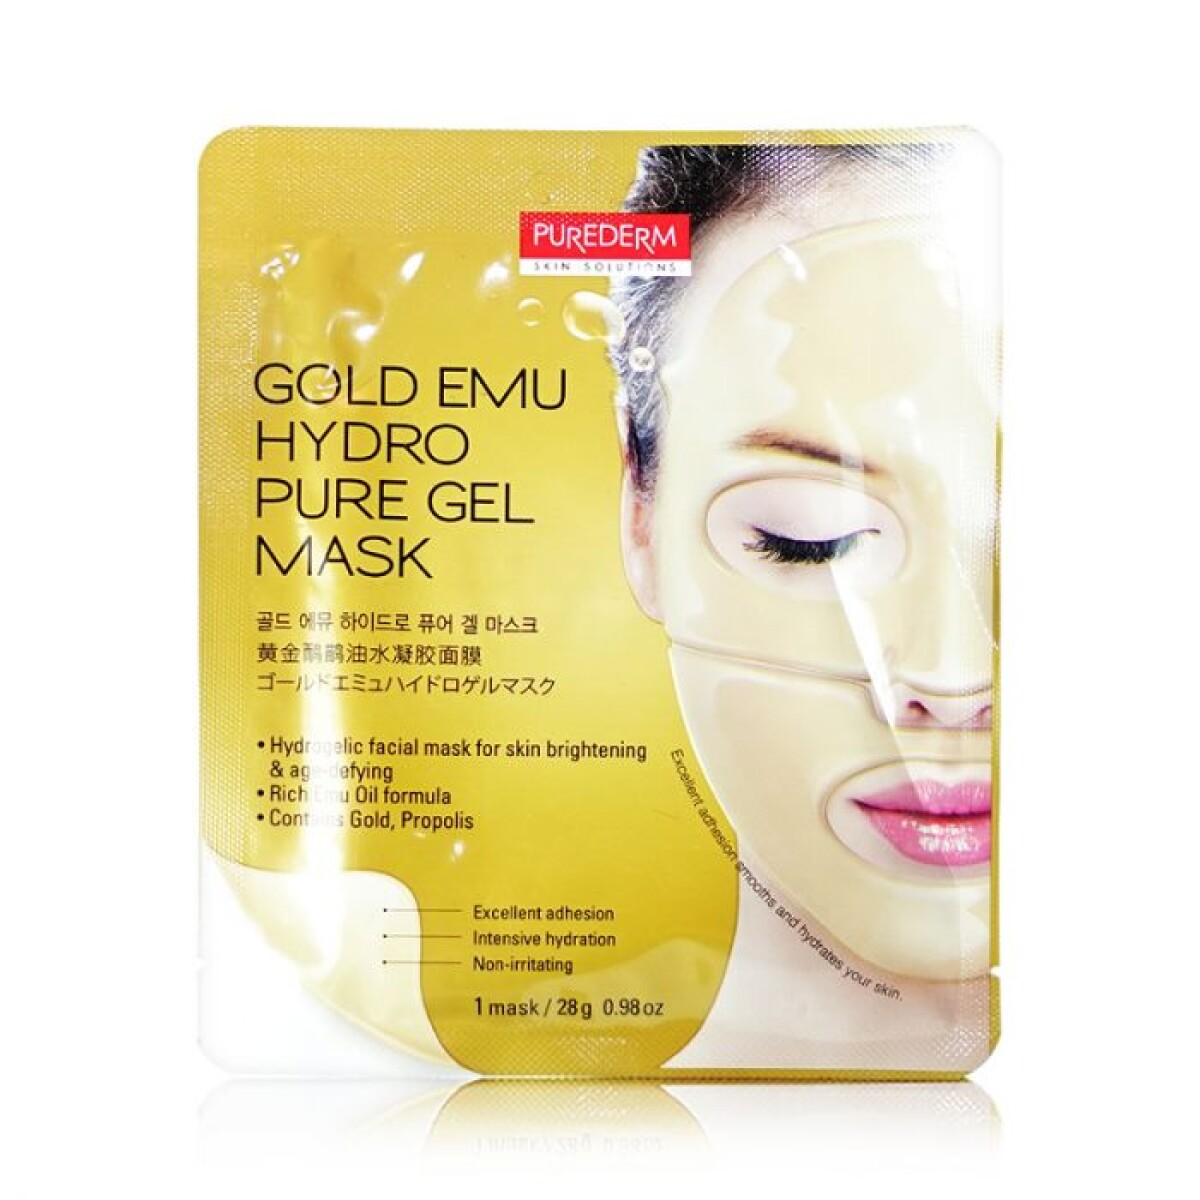 Purederm Gold Emulsión Hydro Gel Mask 